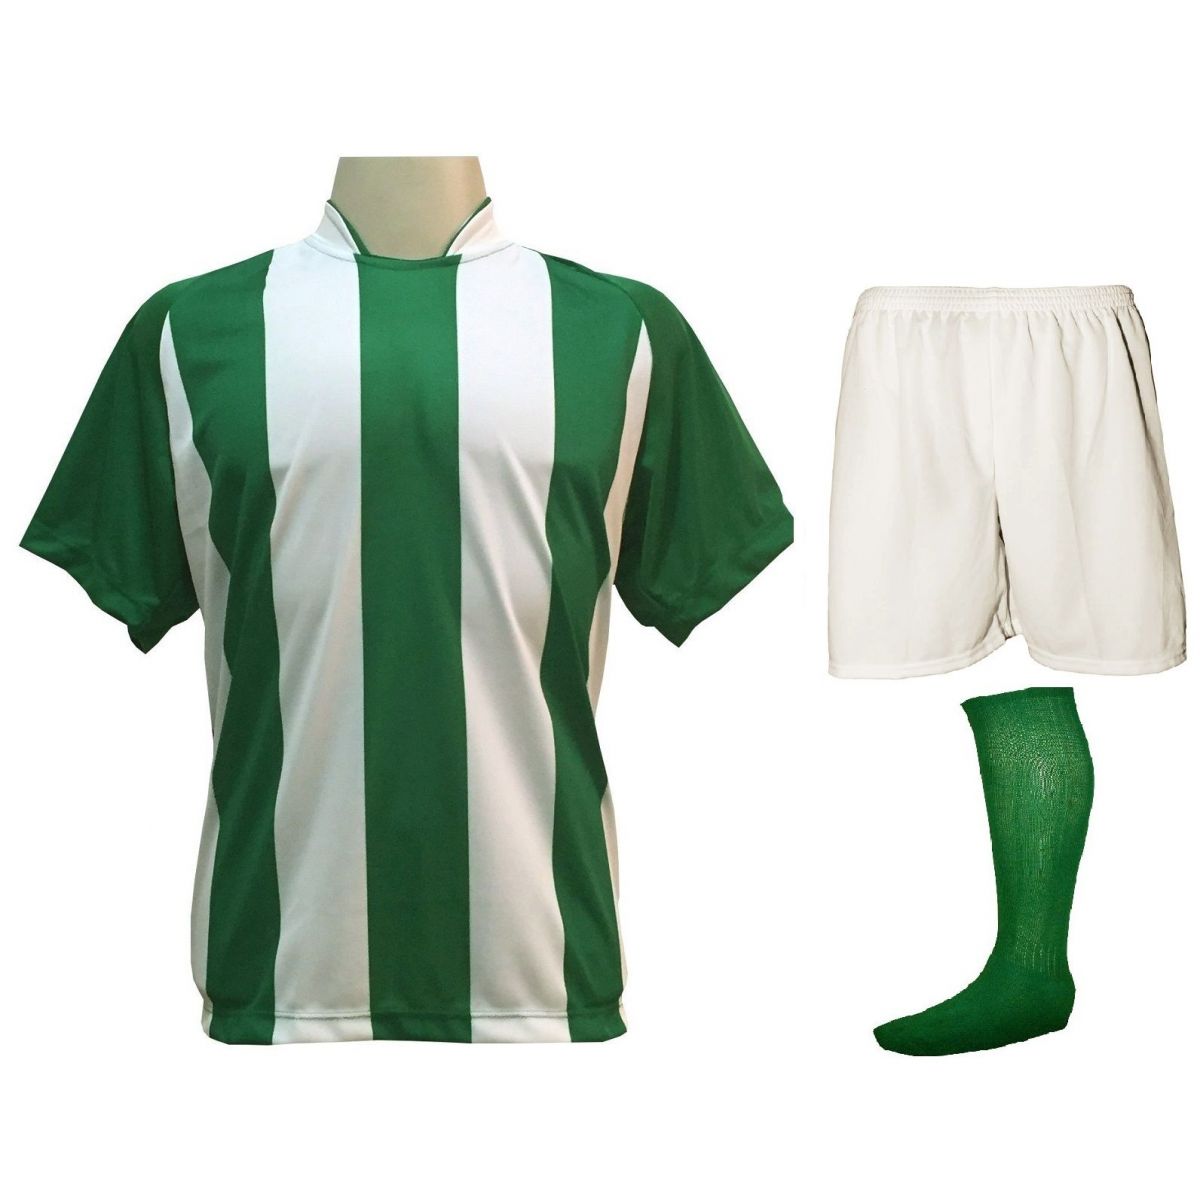 Fardamento Completo modelo Milan 18+2 (18 Camisas Verde/Branco + 18 Calções Madrid Branco + 18 Pares de Meiões Verdes + 2 Conjuntos de Goleiro) + Brindes